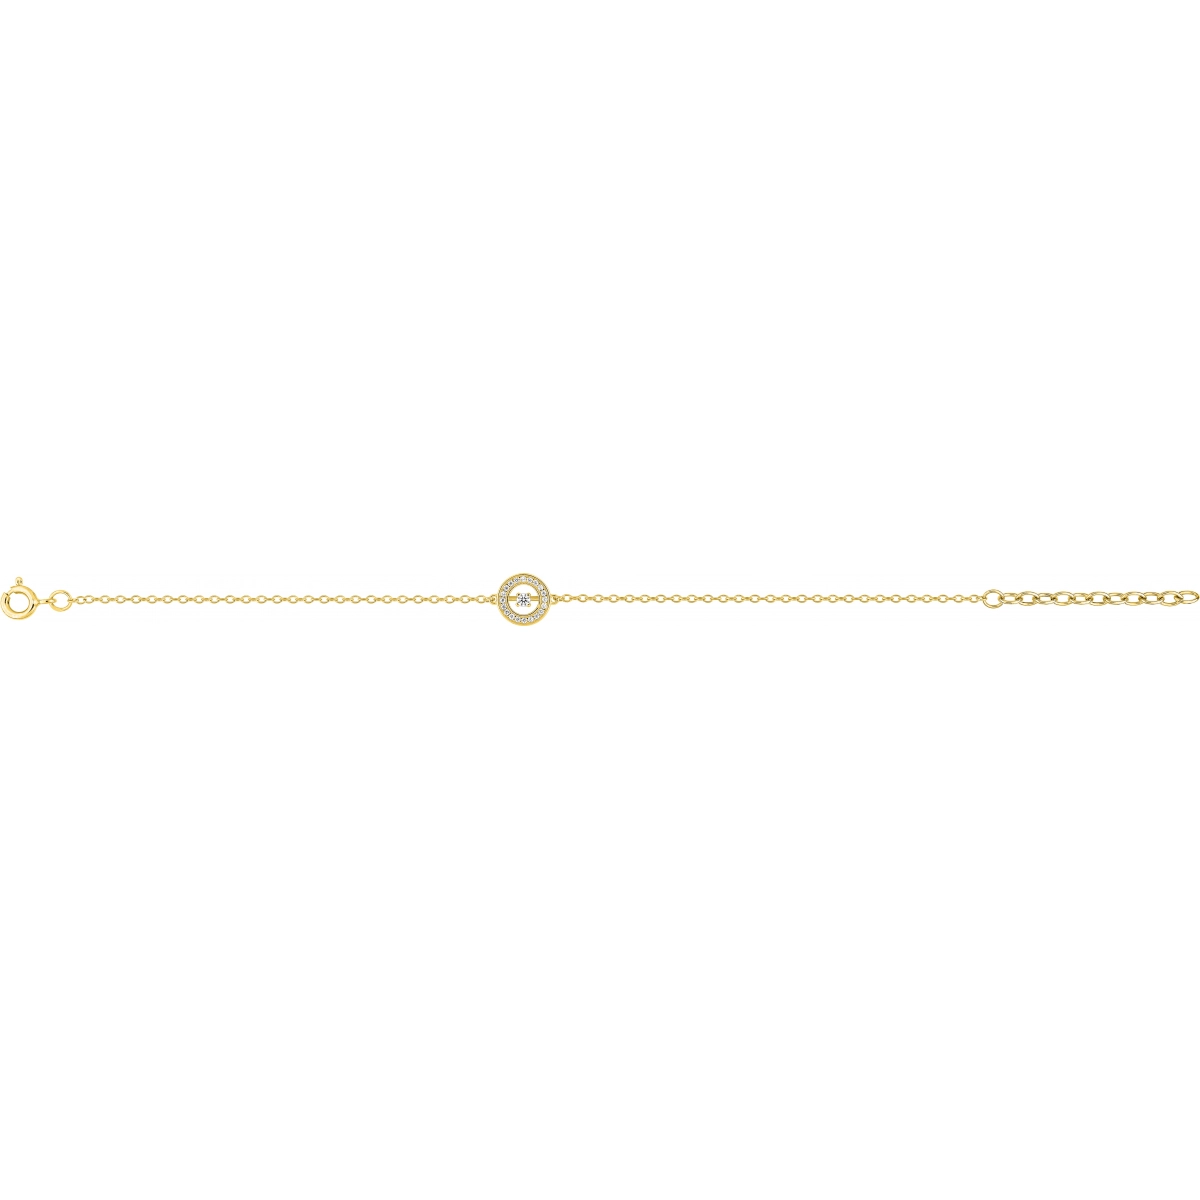 Bracelet w. cz gold plated Brass  Lua Blanca  S10.65102.0